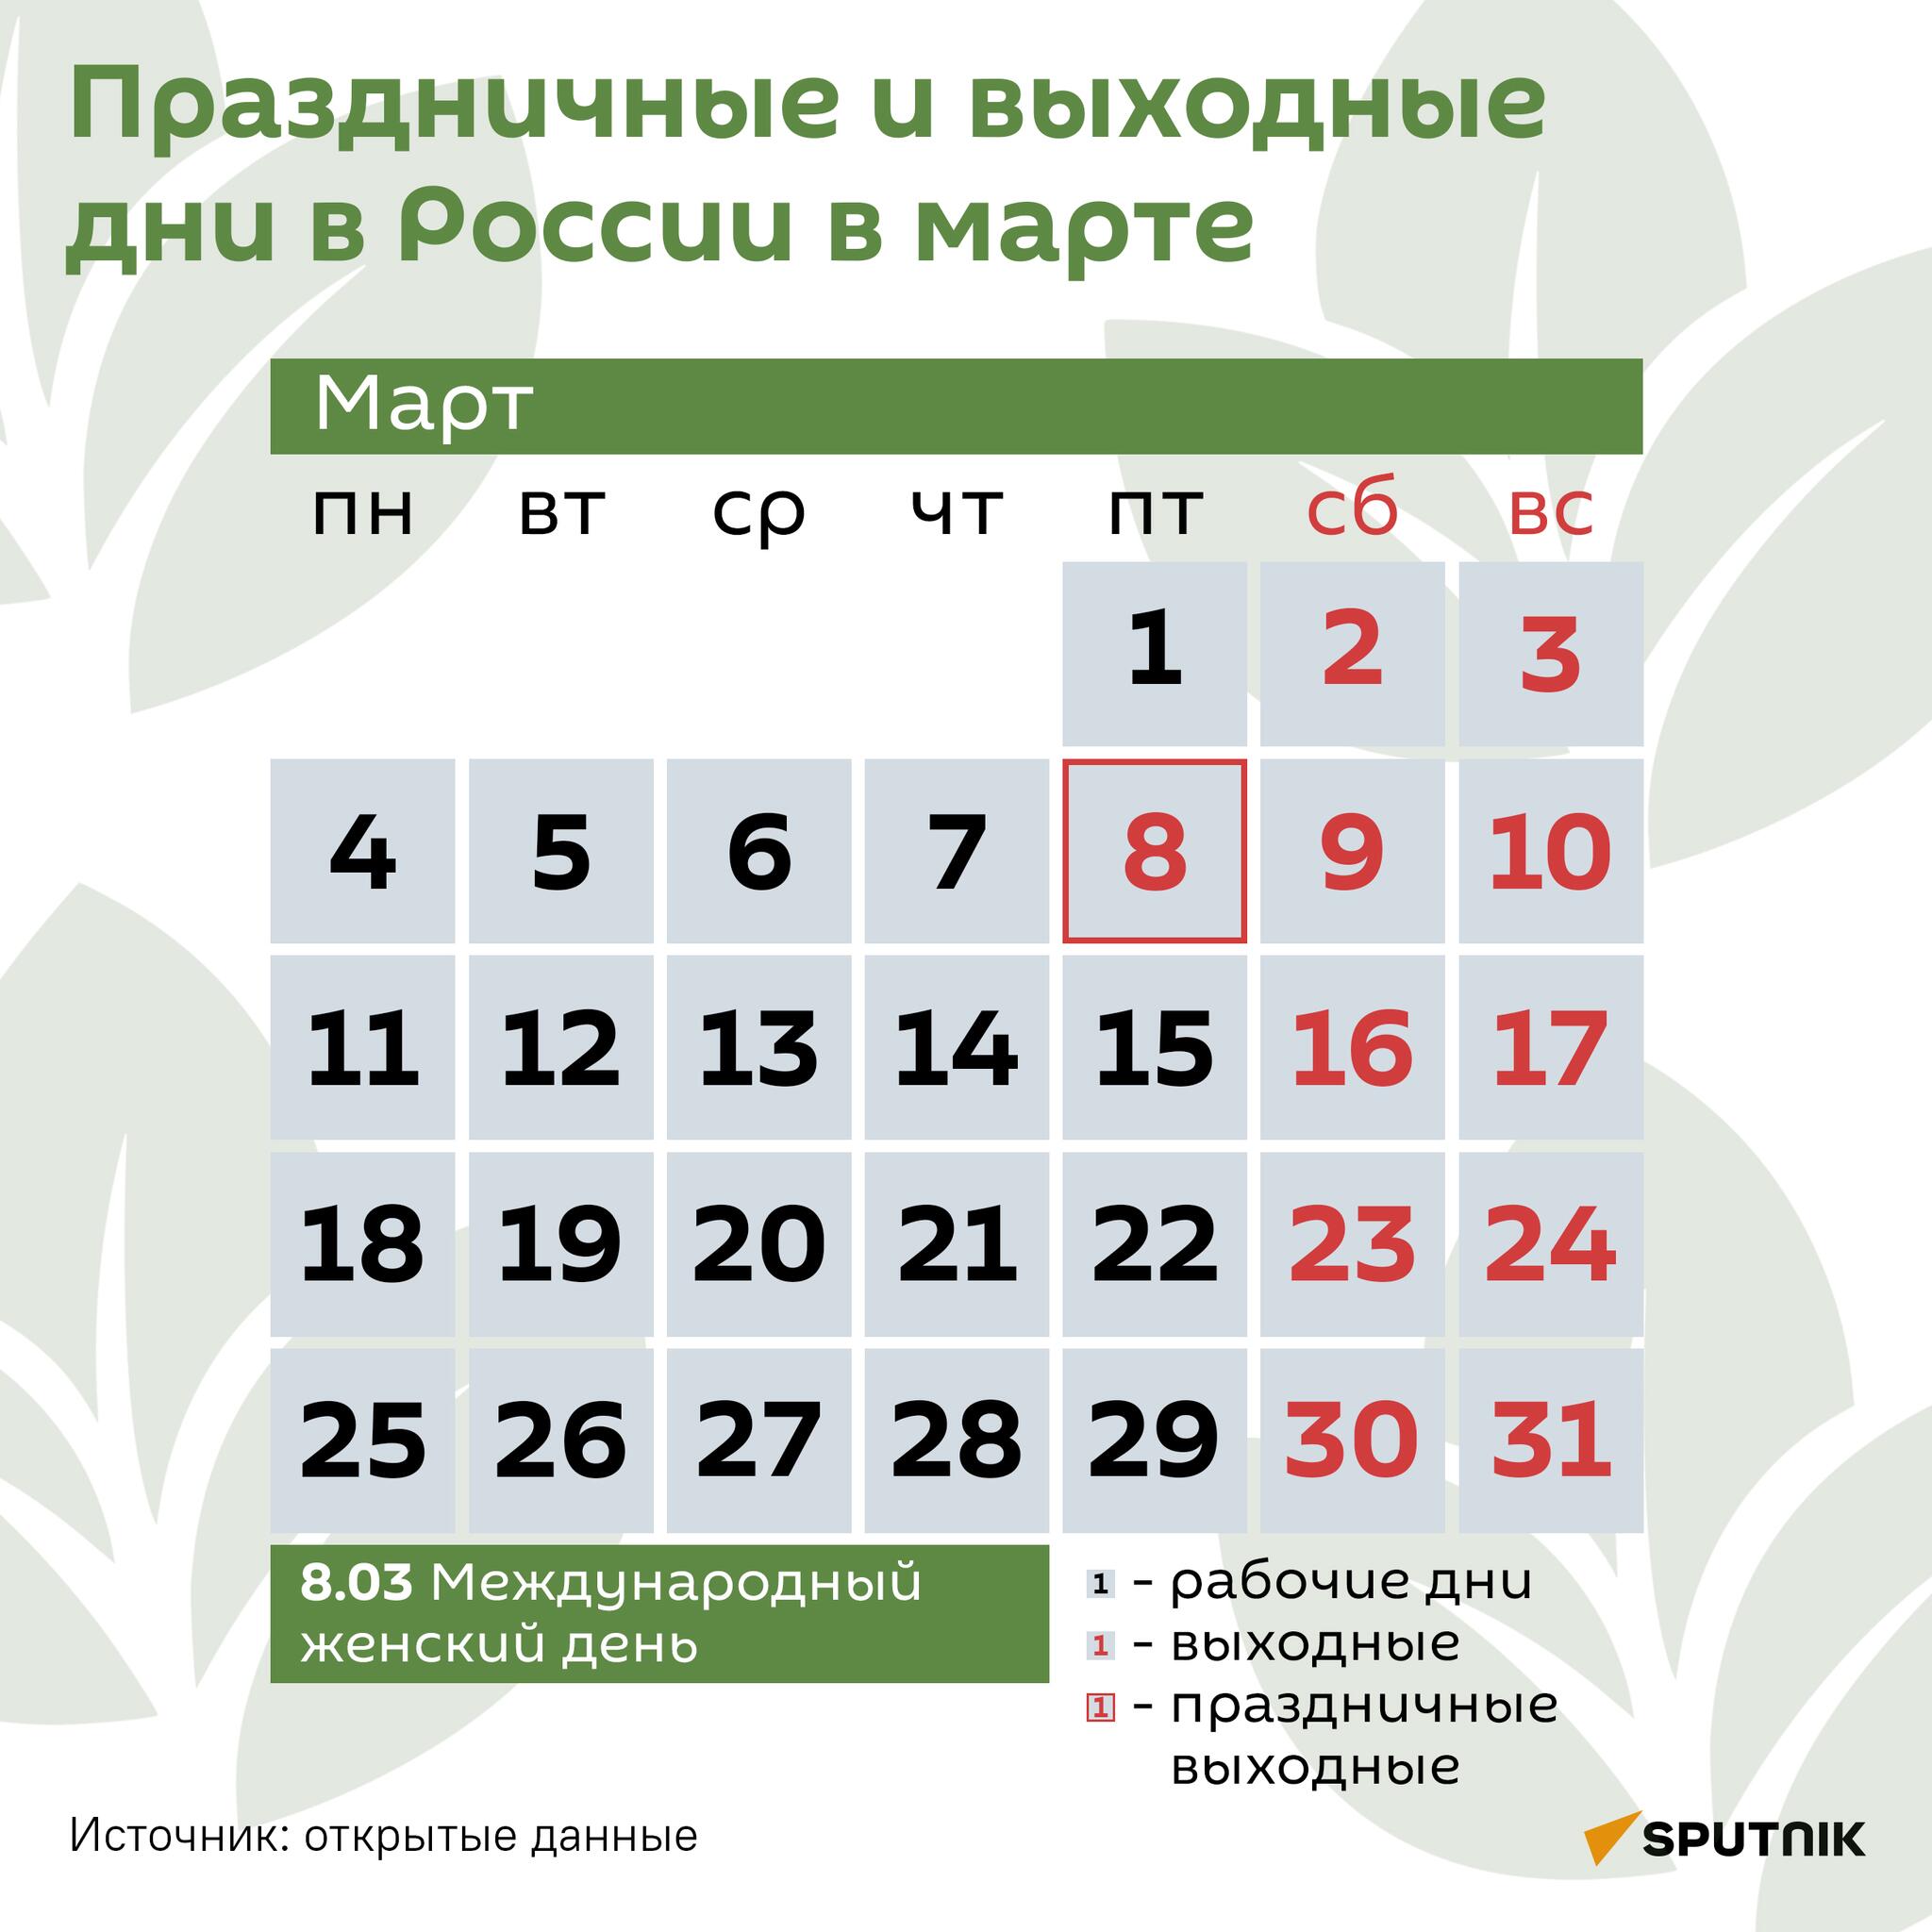 Праздничные и выходные дни в России в марте - Sputnik Таджикистан